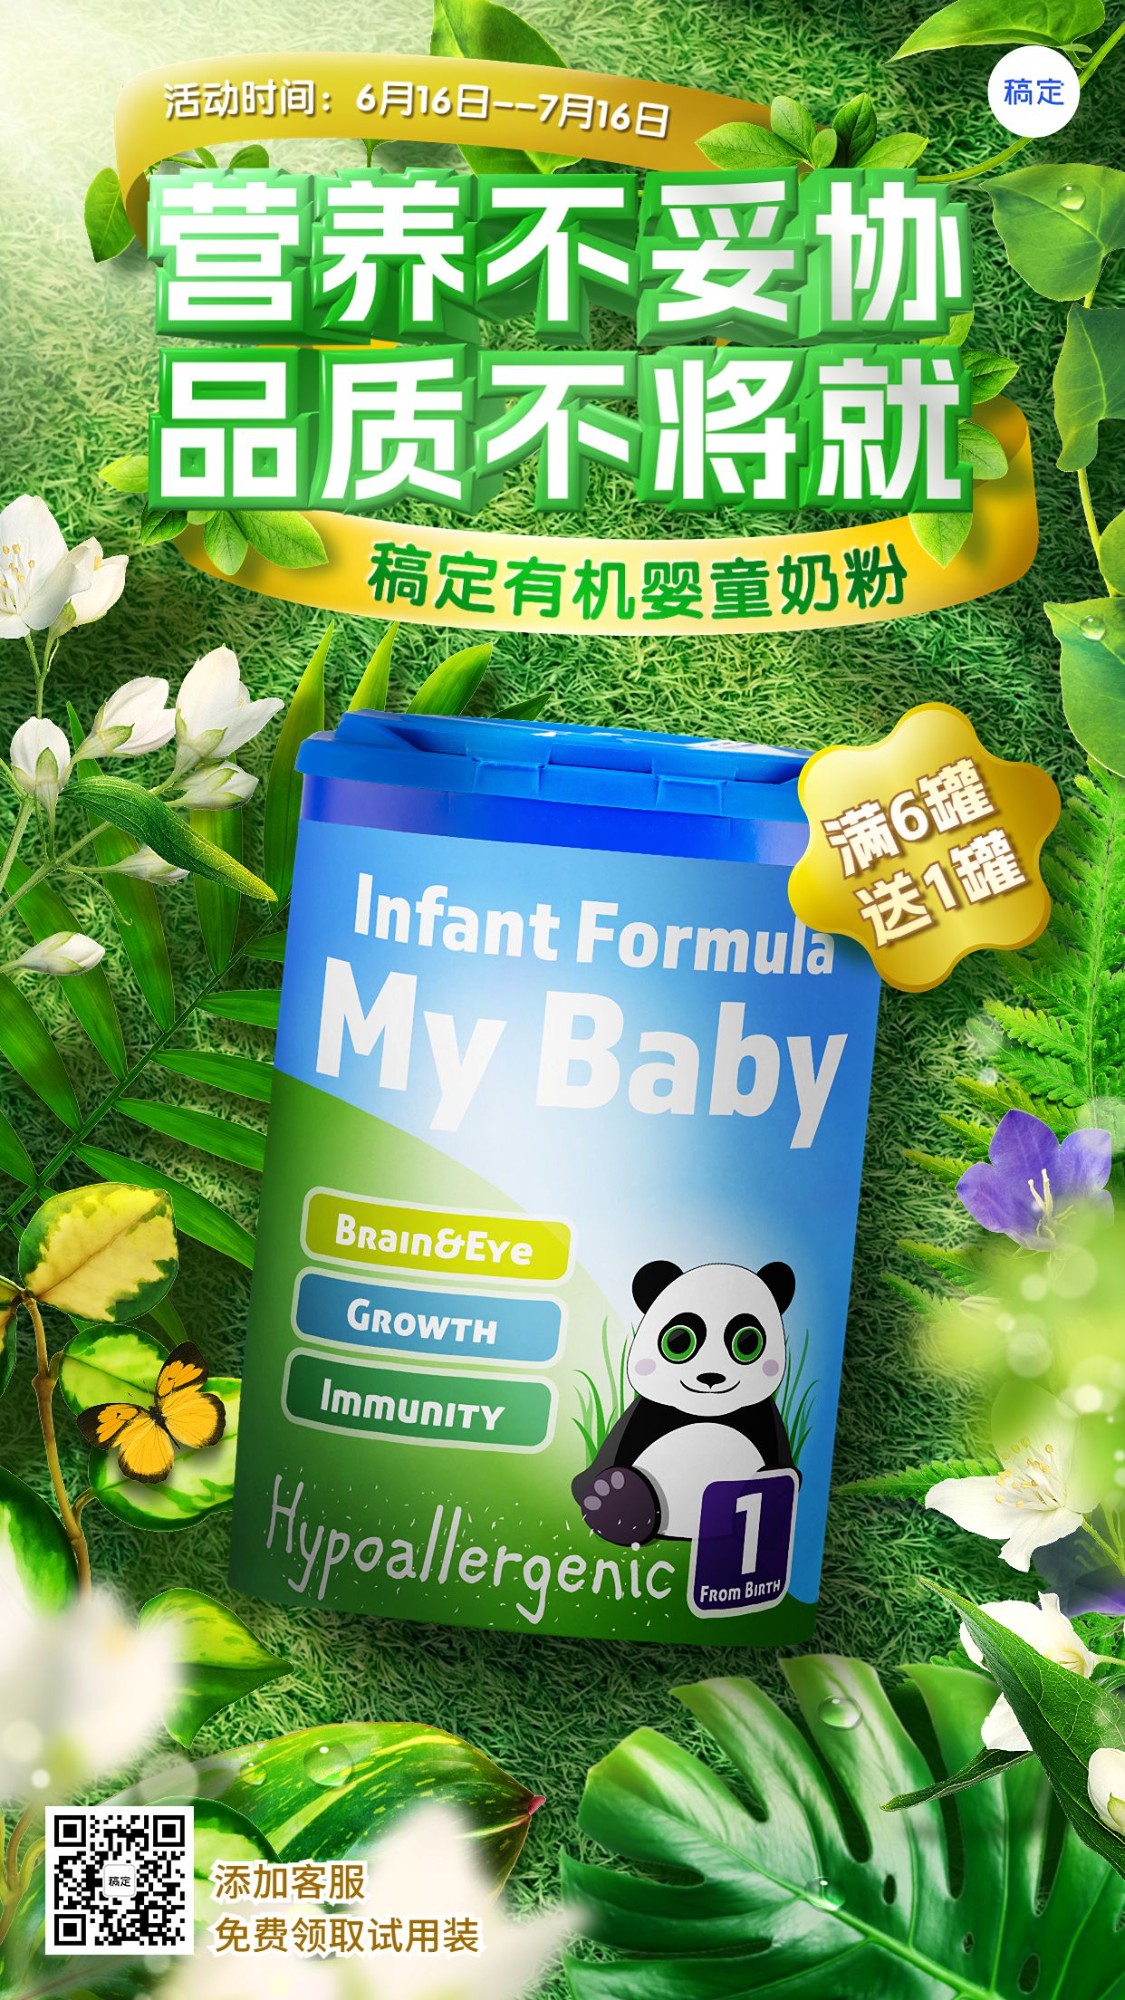 母婴亲子奶粉产品展示营销手机海报预览效果